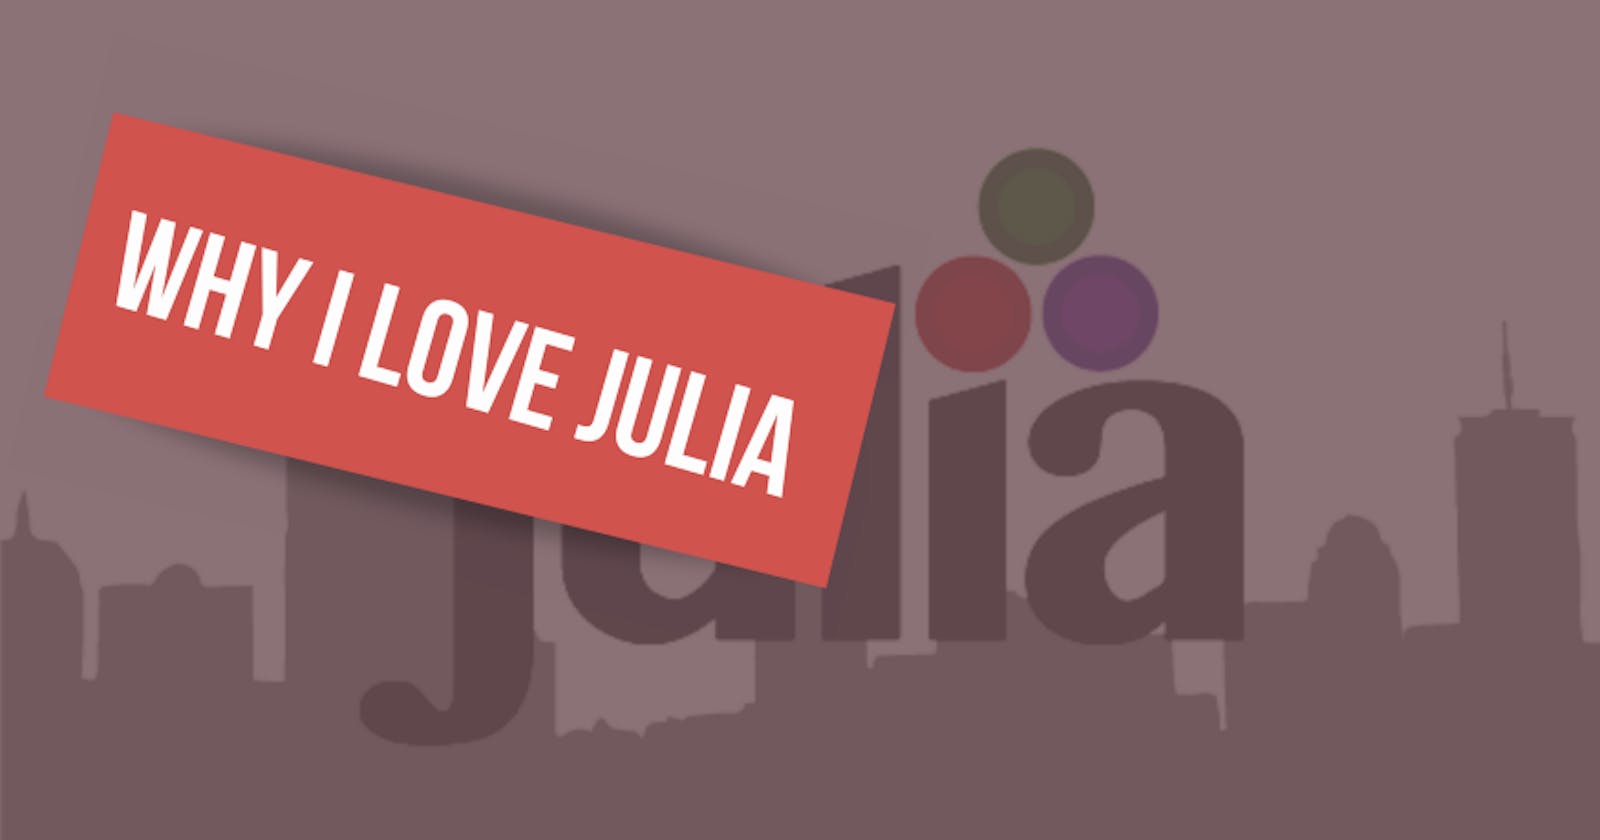 Why I love Julia